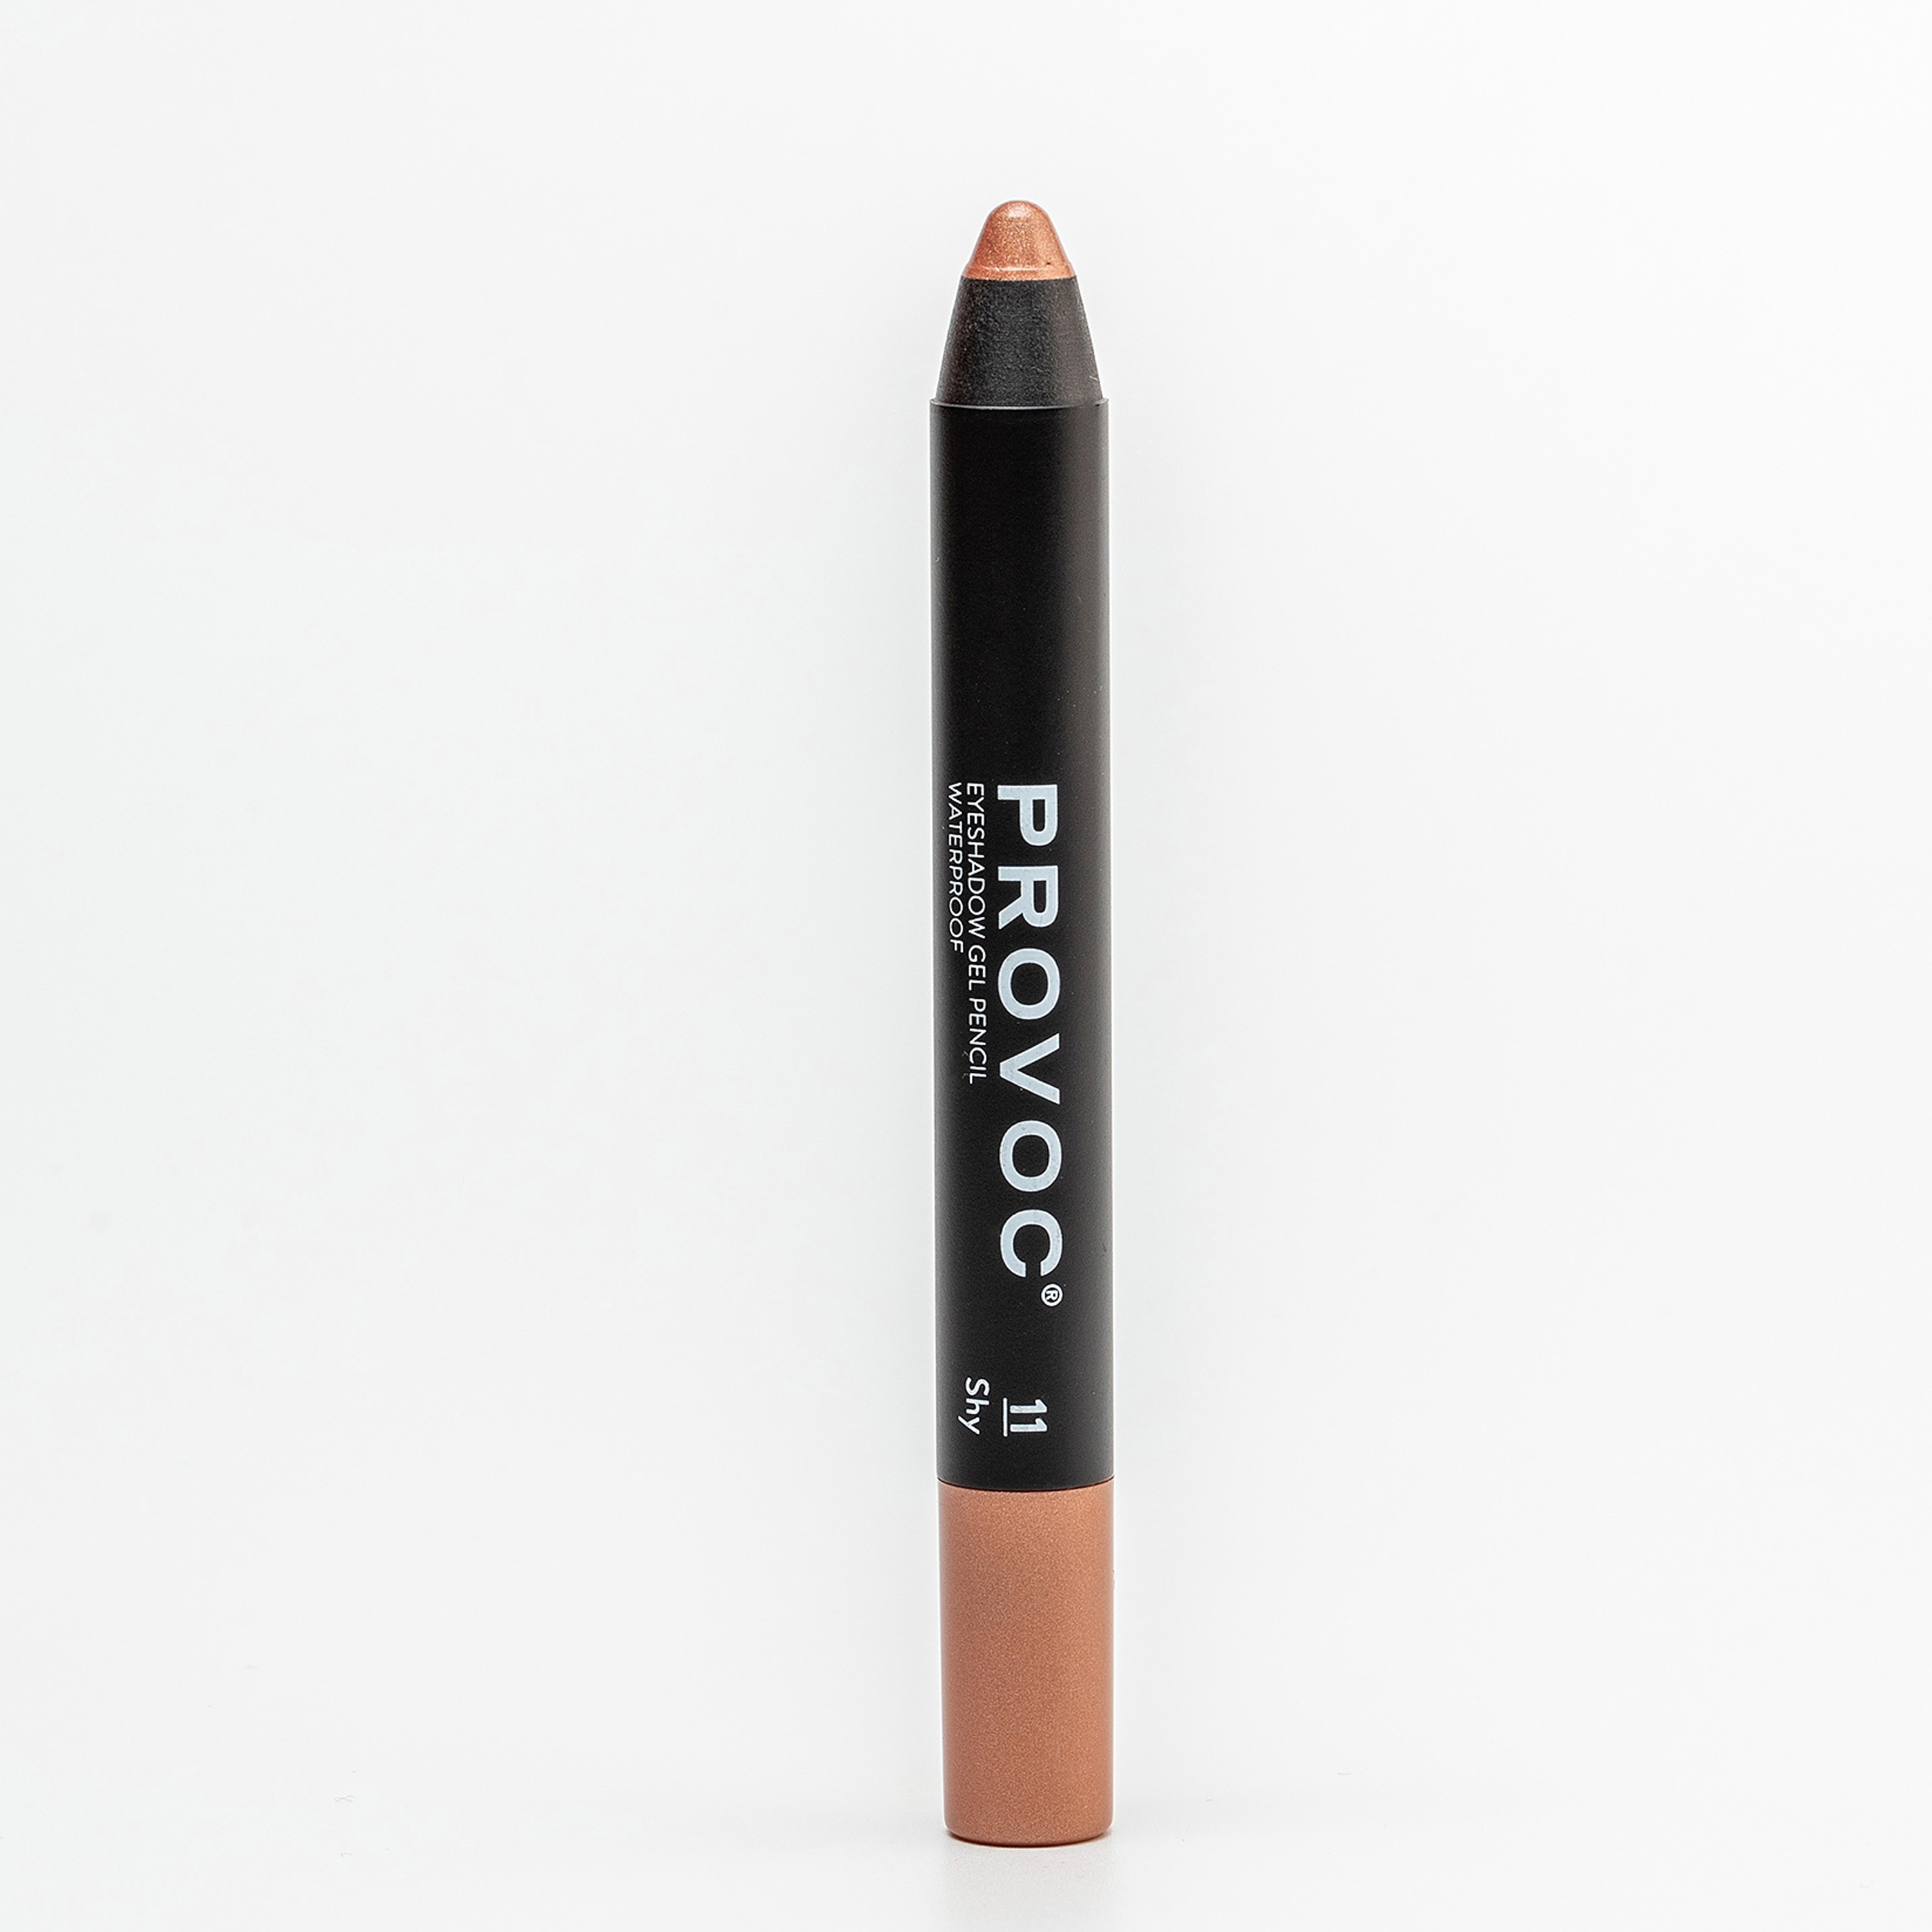 Тени-карандаш PROVOC Eyeshadow Pencil L водостойкие, шиммер 11 персиковый, 2,3 г тени карандаш водостойкие eyeshadow pencil pvep11 11 персиковый шиммер 1 шт